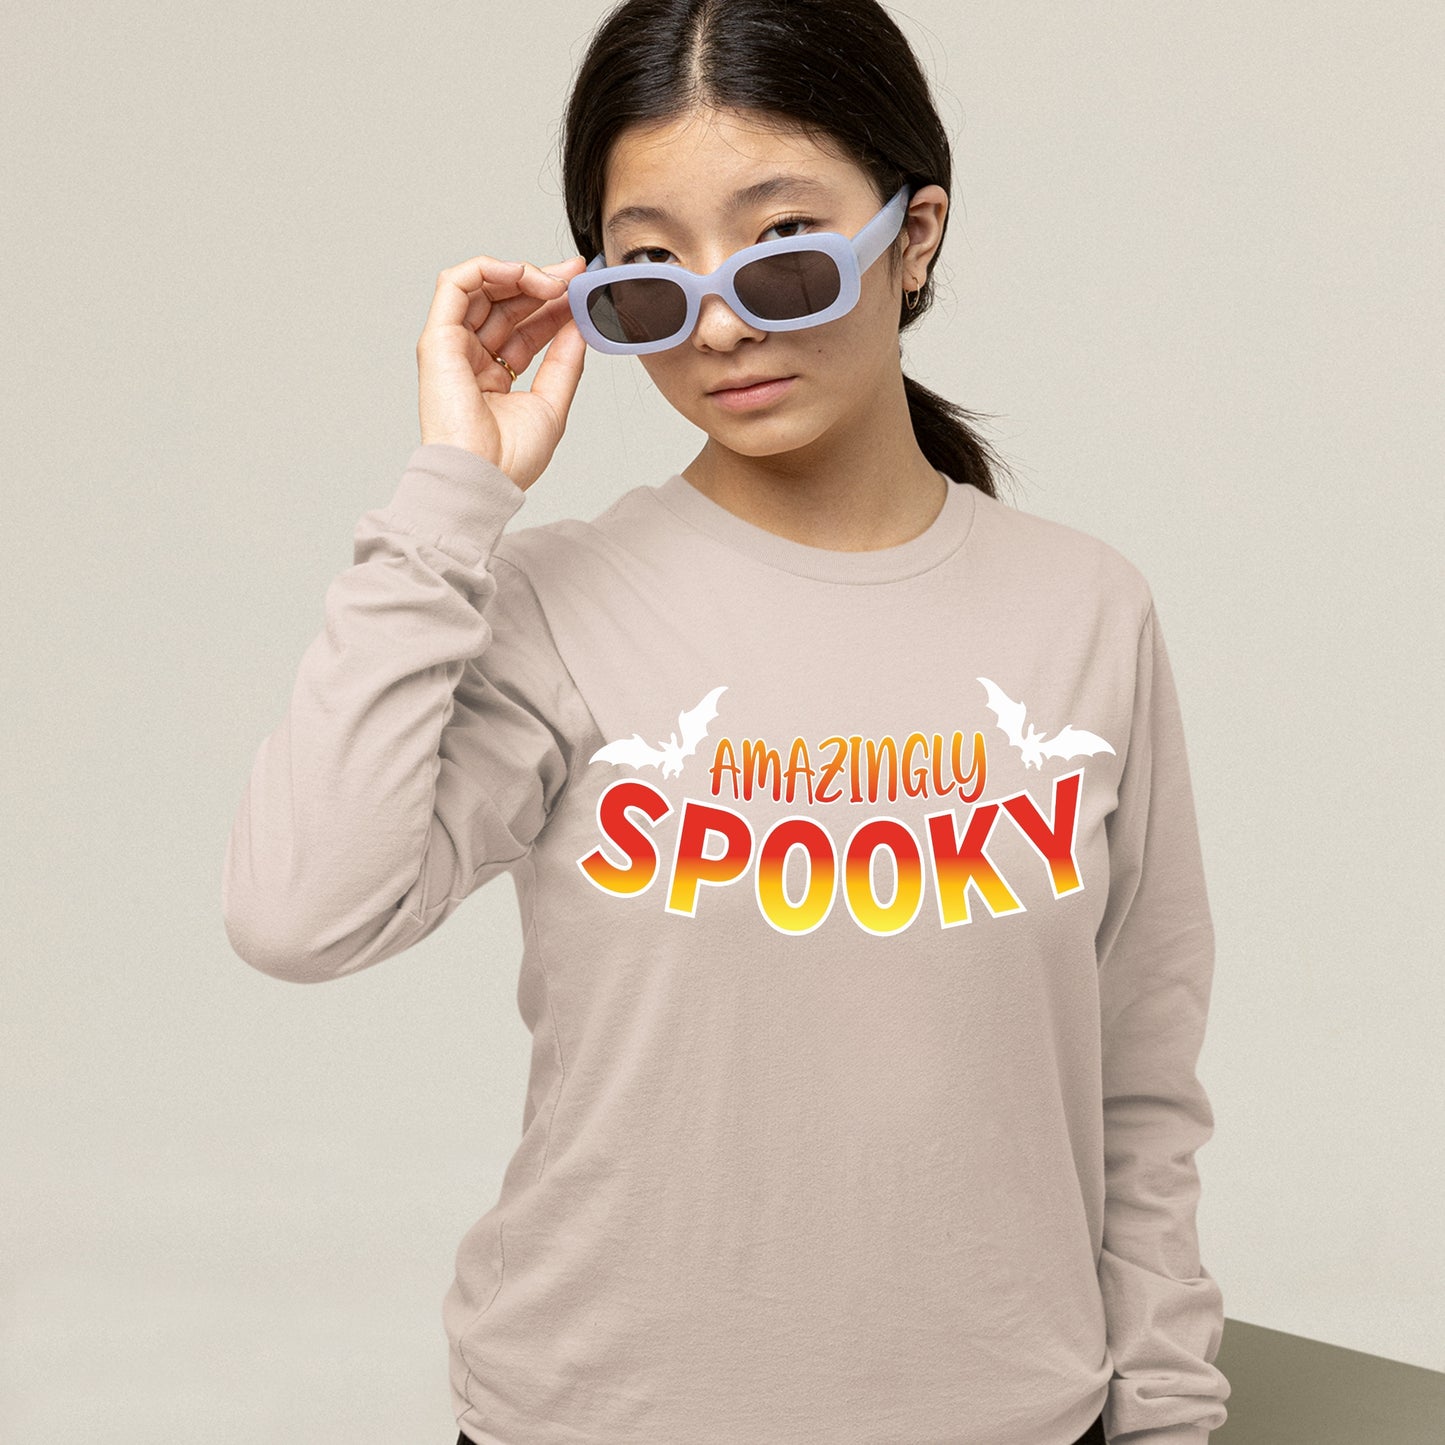 Halloween Amazingly Spooky Sweatshirt, Halloween Gift Sweatshirt, Halloween Sweater, Cute Halloween Sweatshirt, Halloween Design Shirt